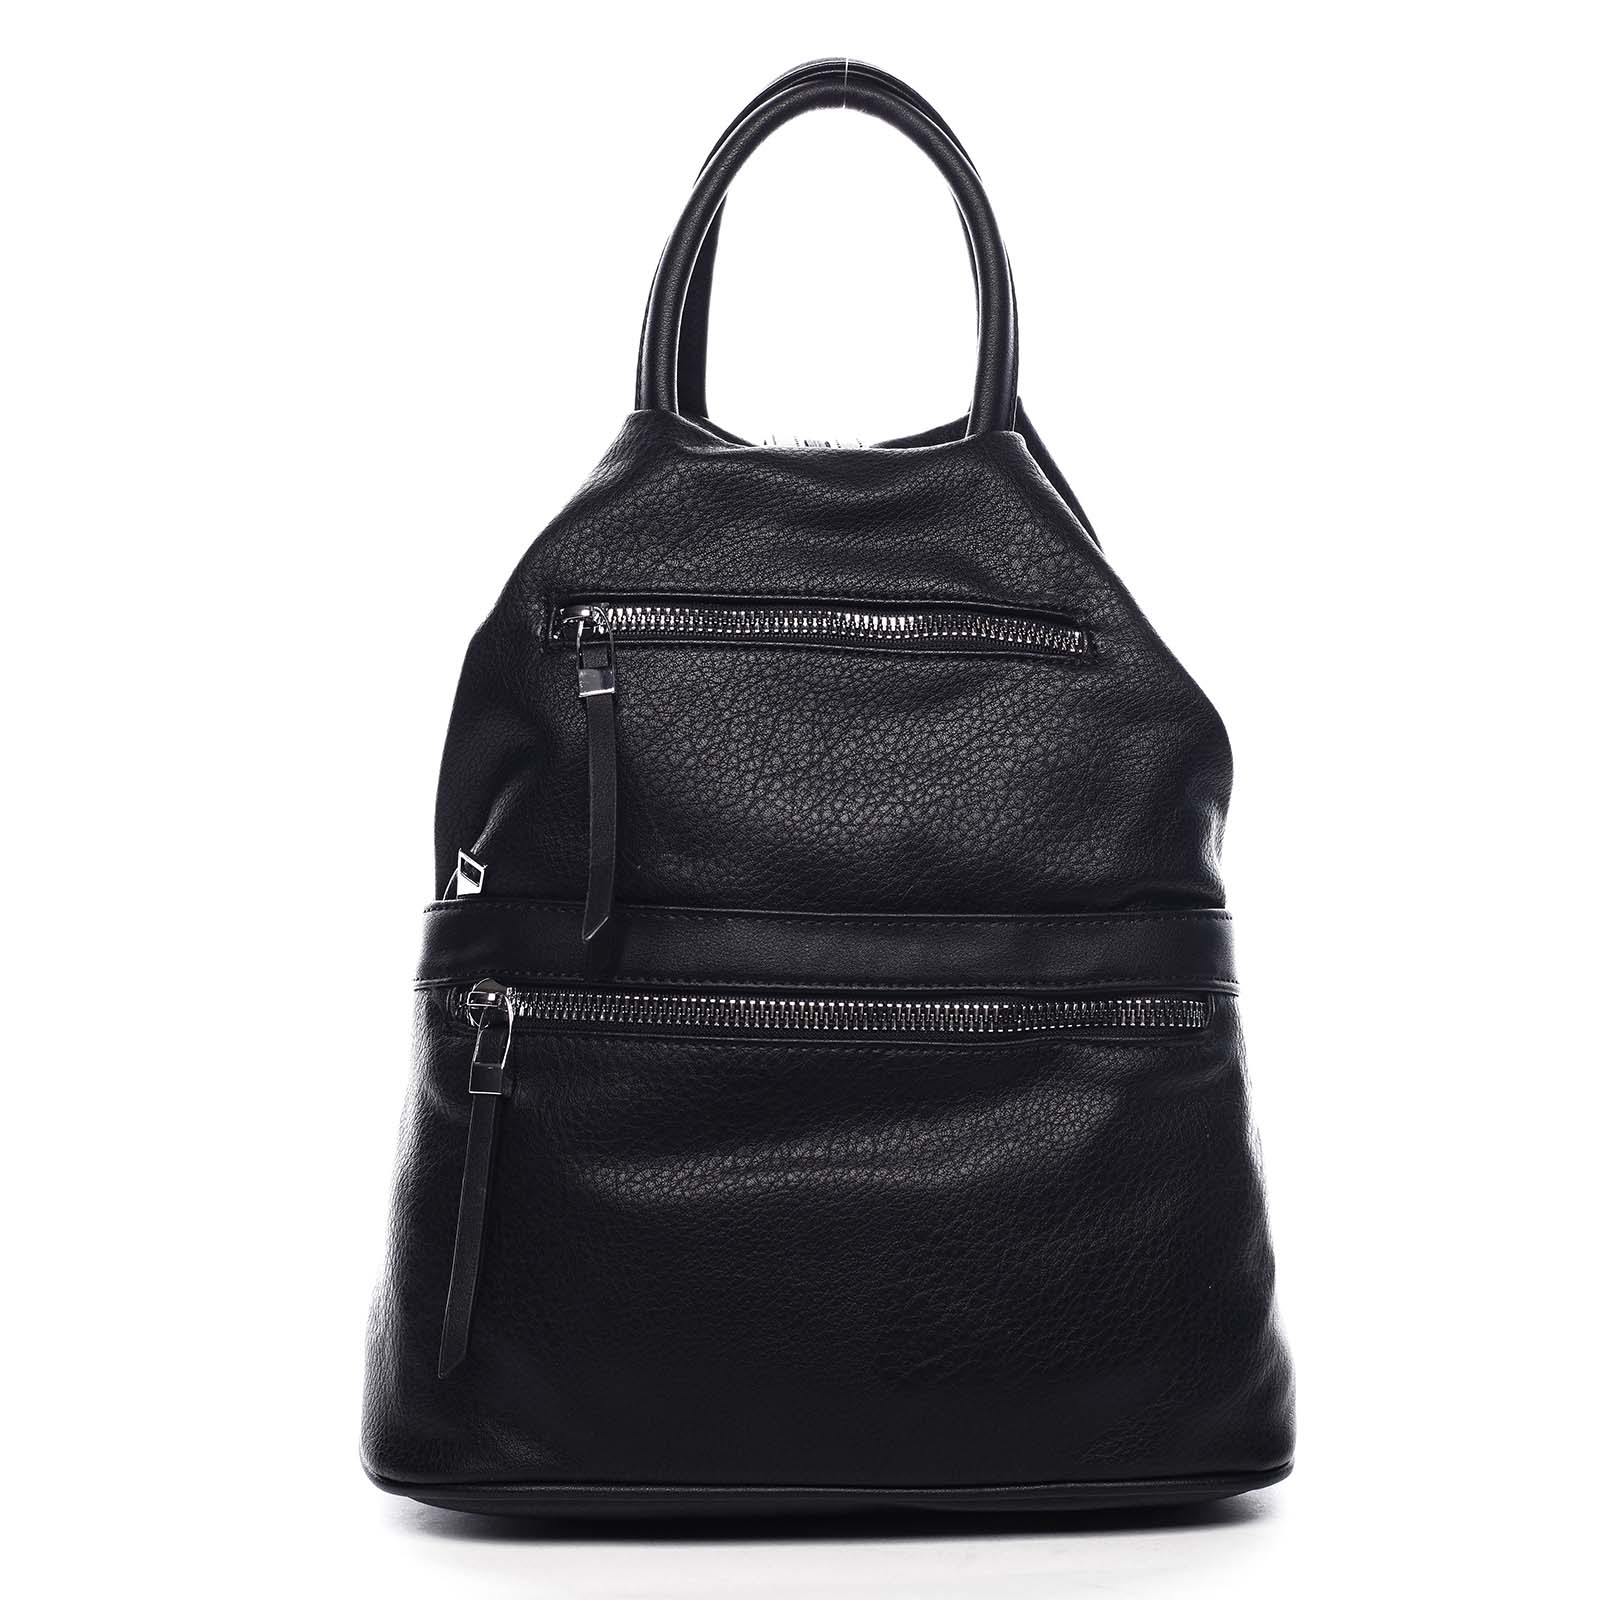 Originální dámský batoh kabelka černý - Romina Gempela černá